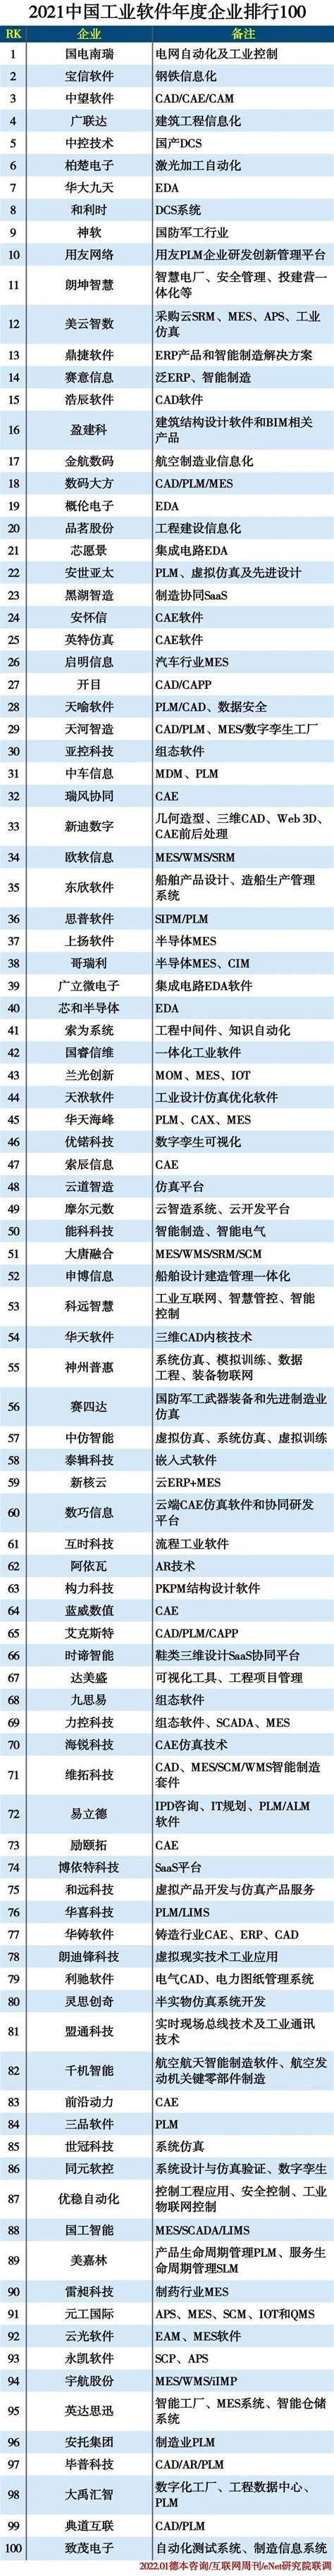 2013年中国软件业务收入百强企业排行榜（名单）_E网资料_西部e网